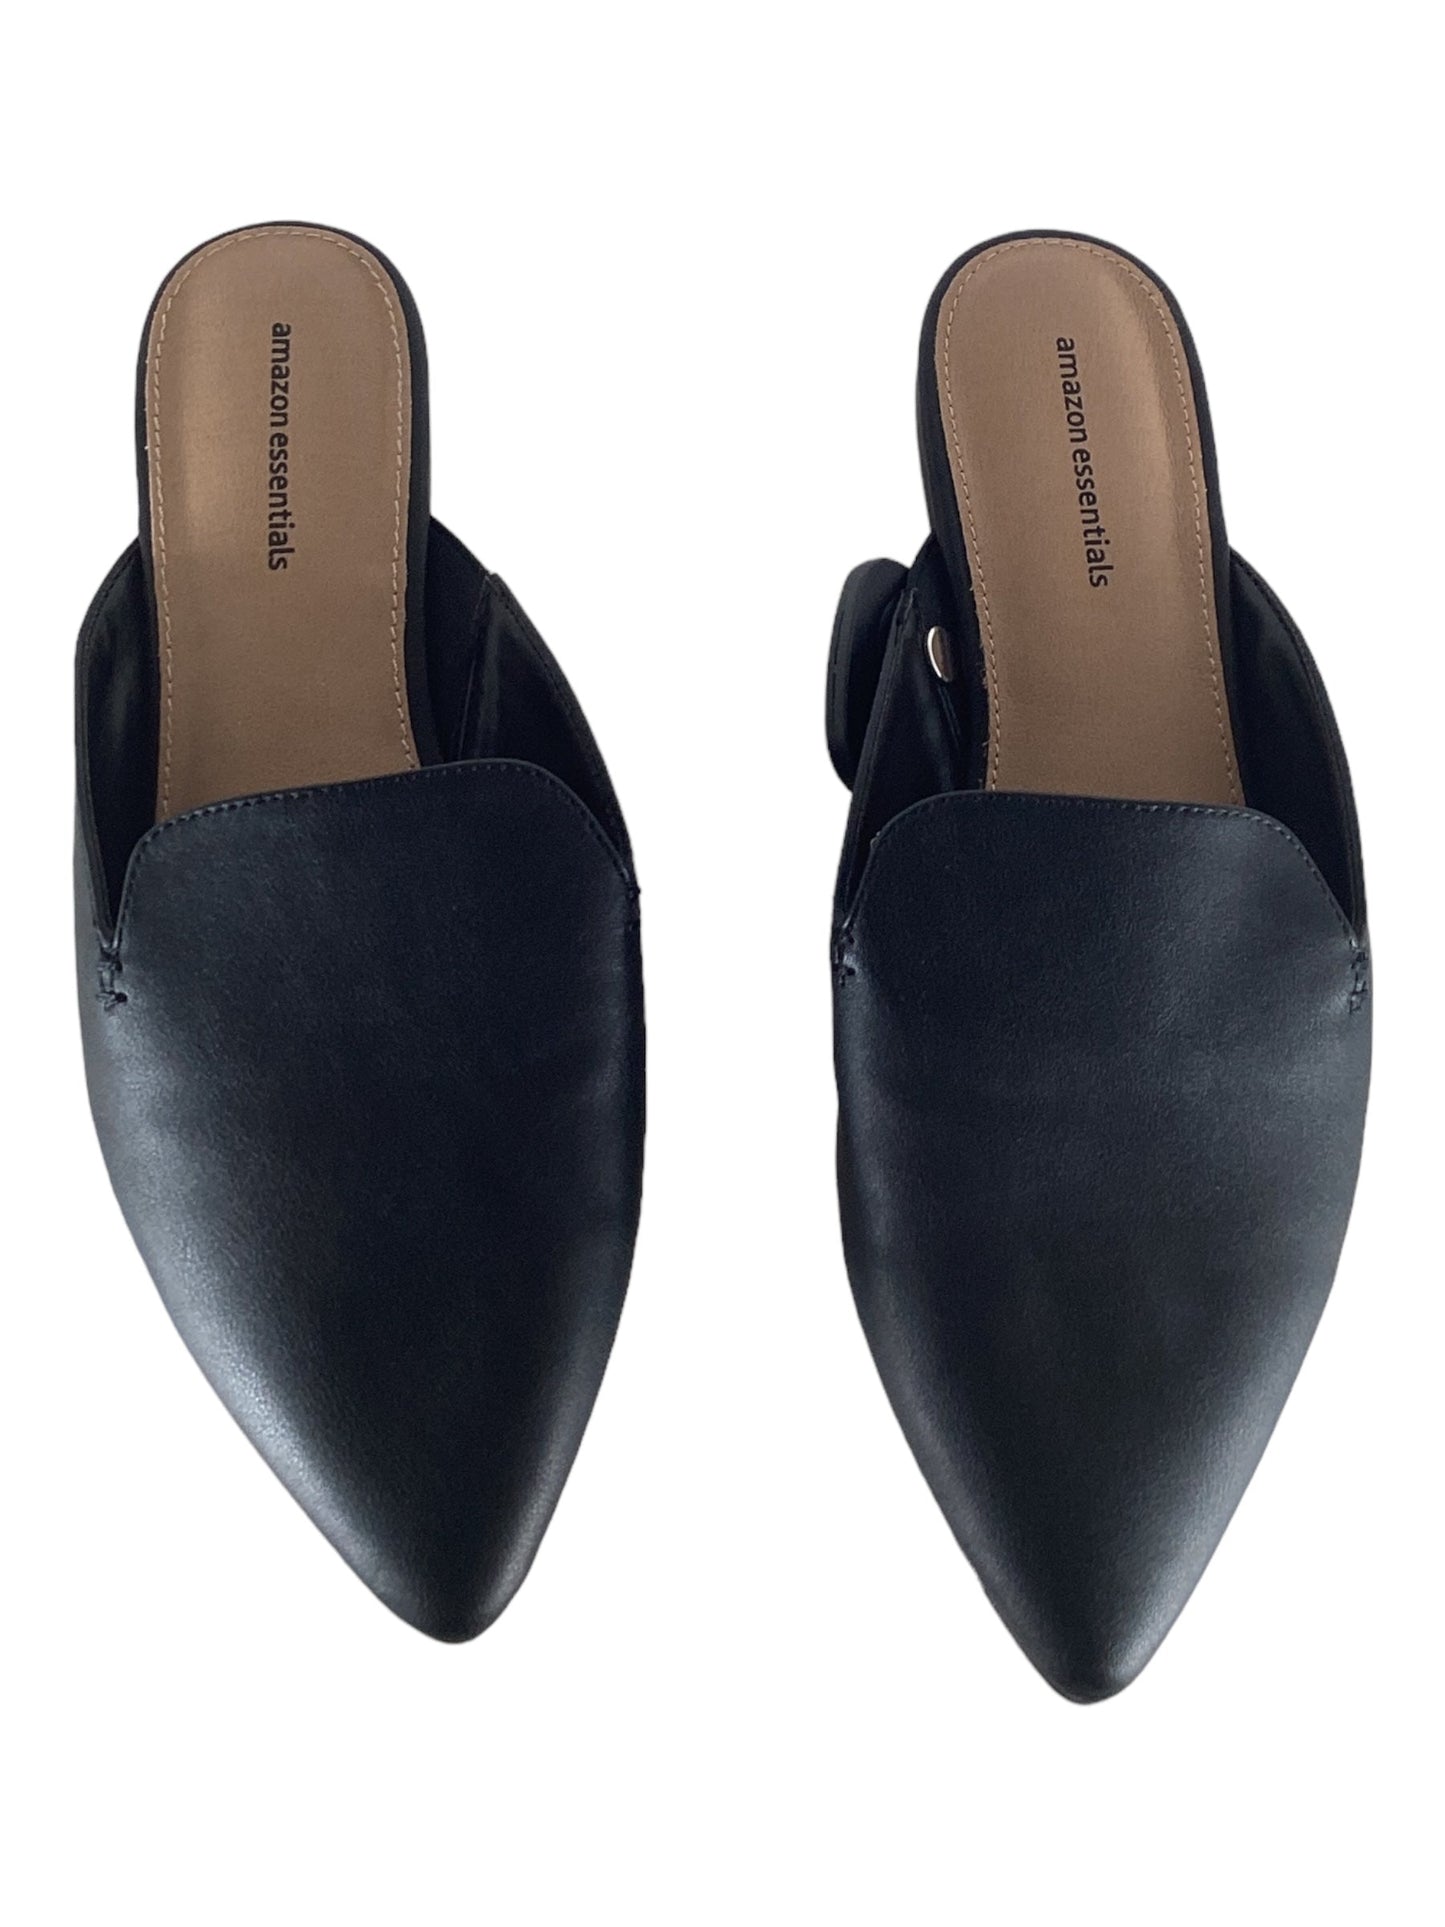 Black Shoes Flats Amazon Essentials, Size 8